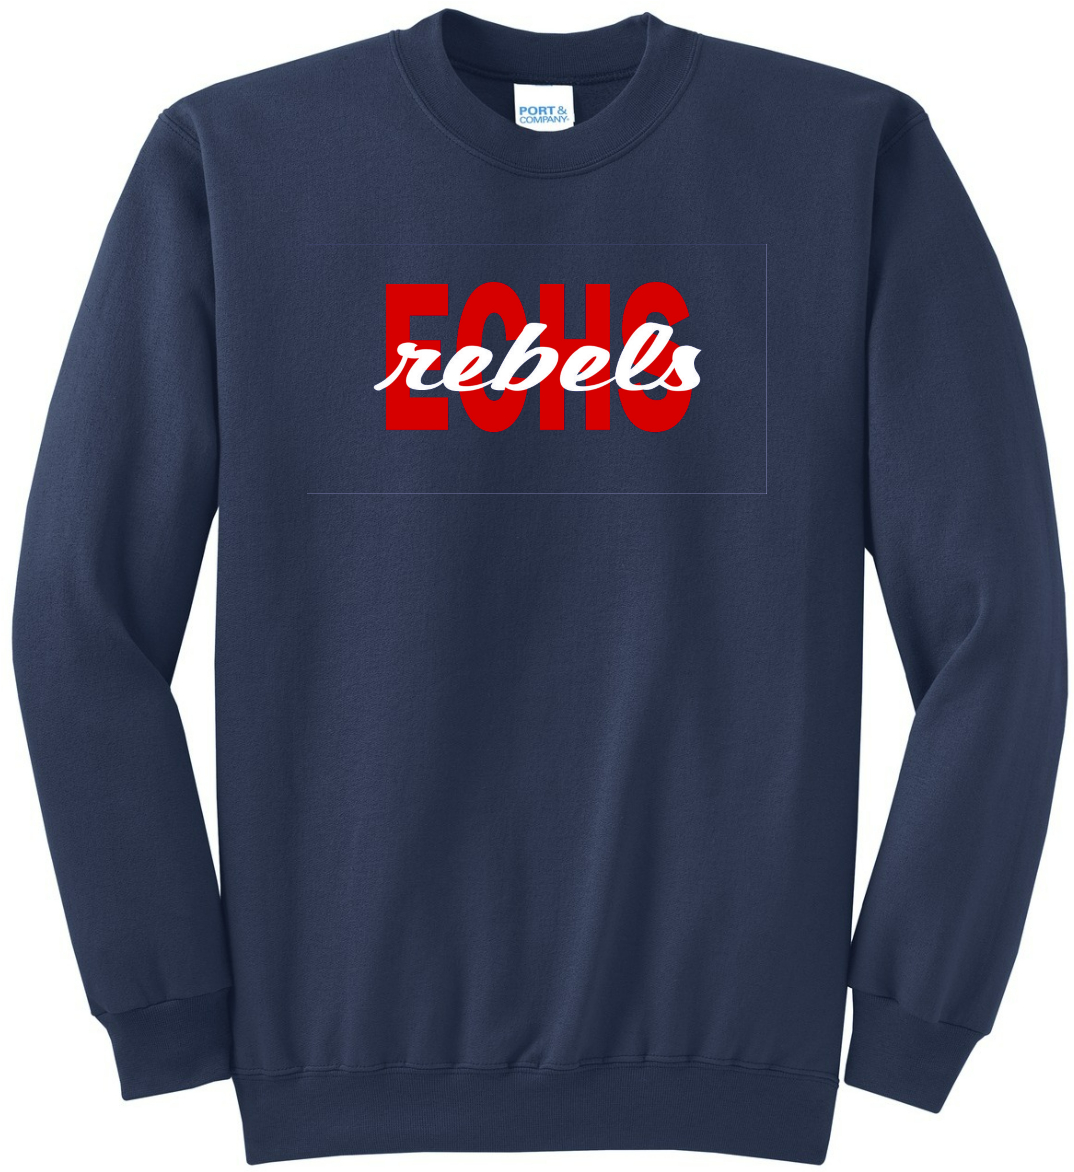 ECHS Rebels Navy Sweatshirt